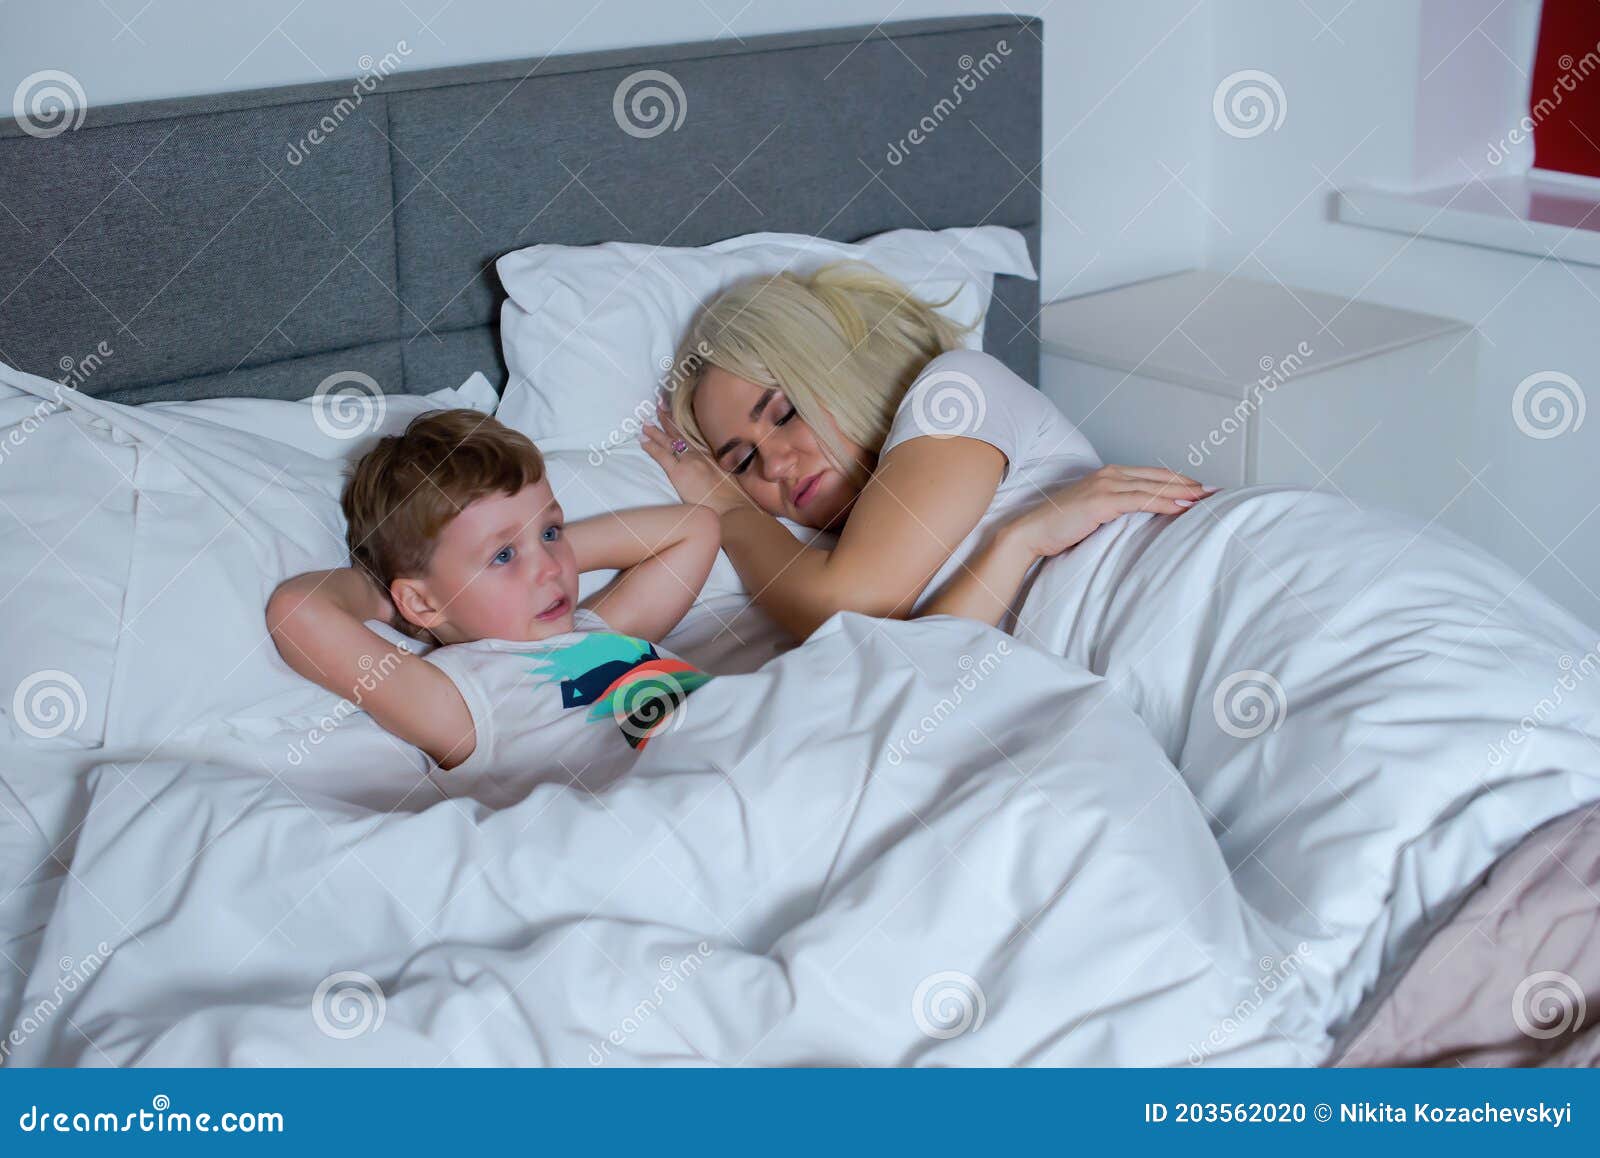 спящая мама азиатка и ее сын фото 63